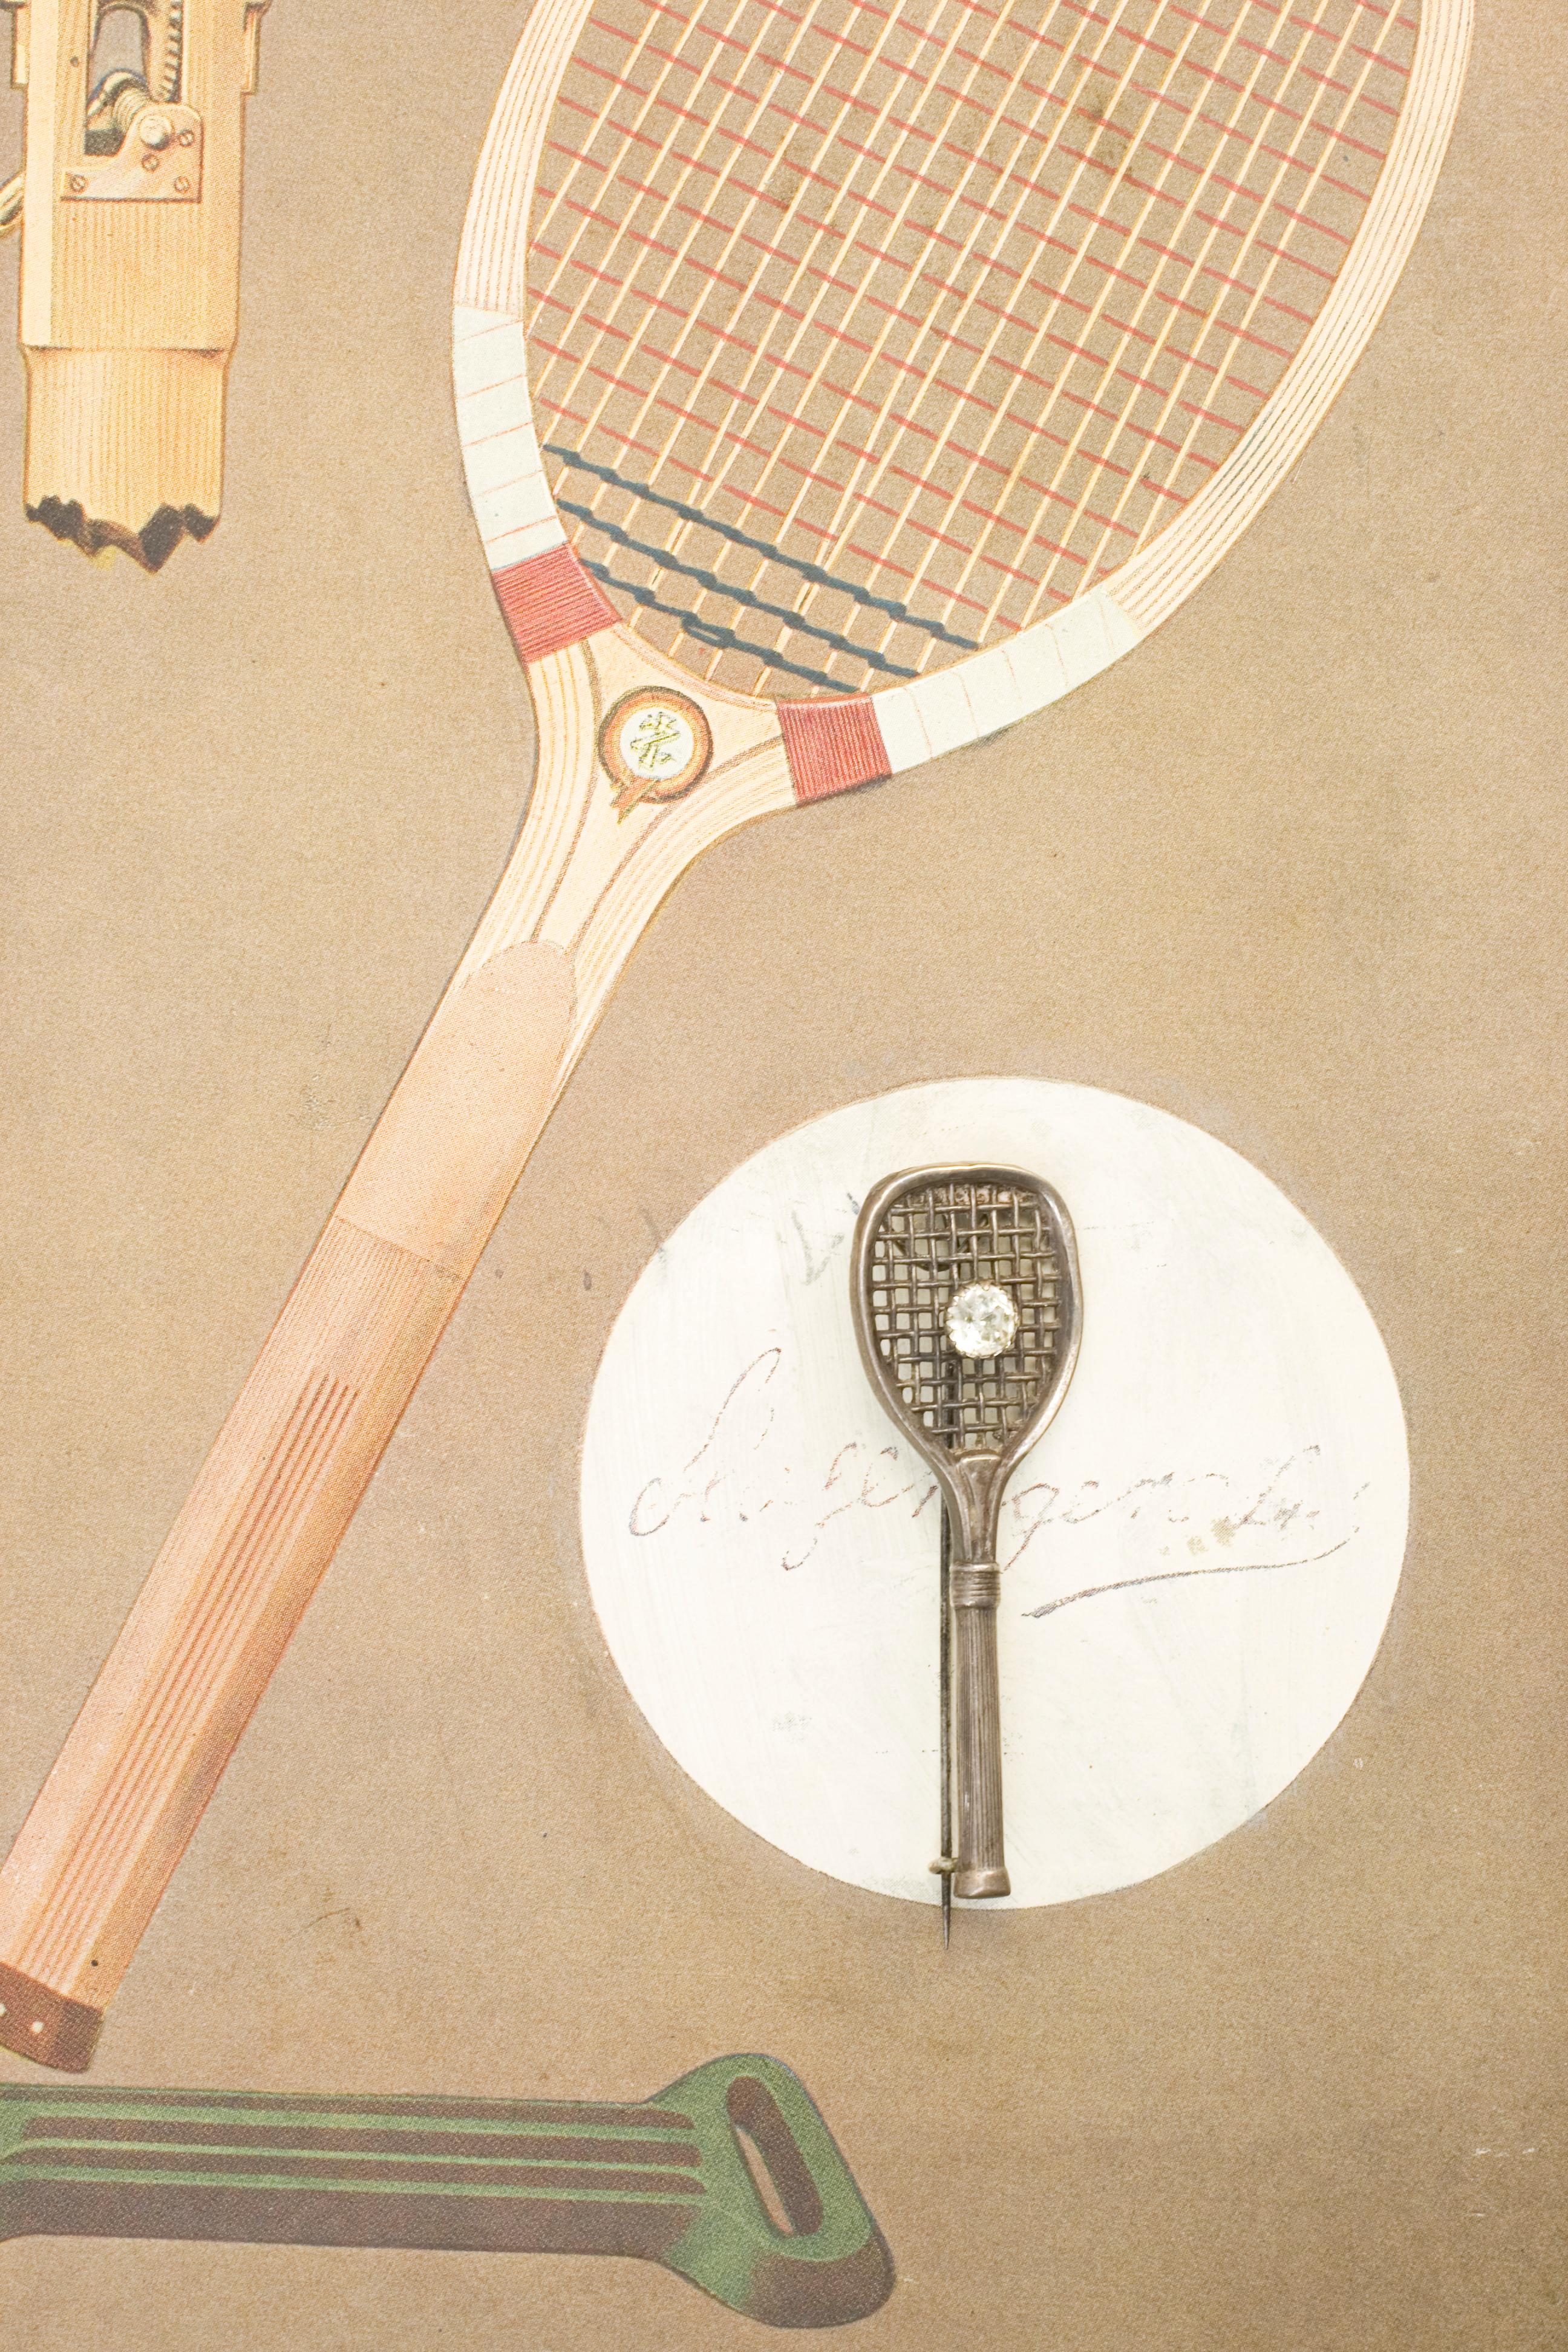 1920s tennis racket